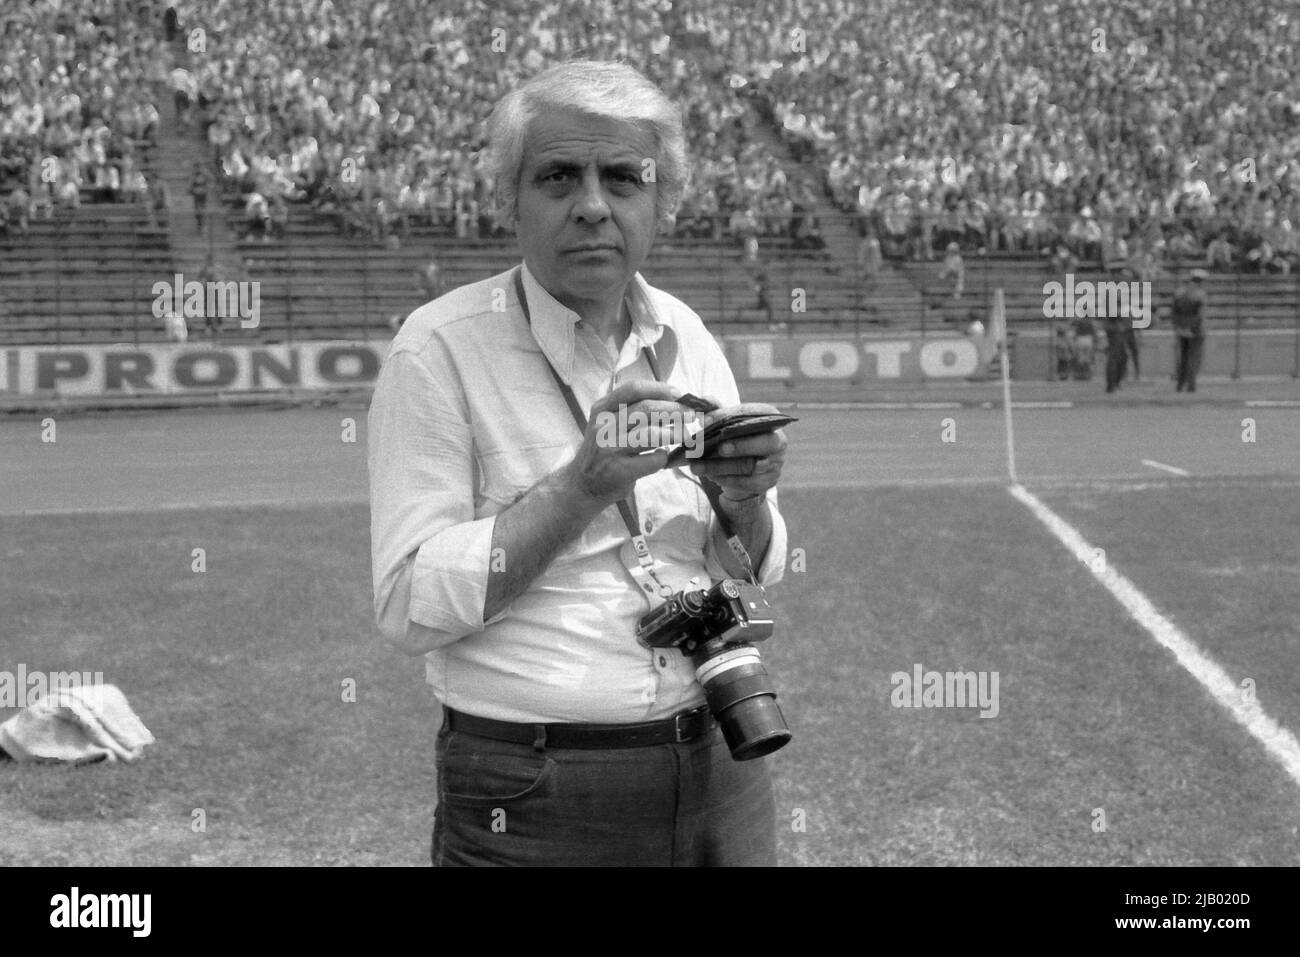 Fotorrivera rumena dello sport Ion Mihaica, circa 1974 Foto Stock